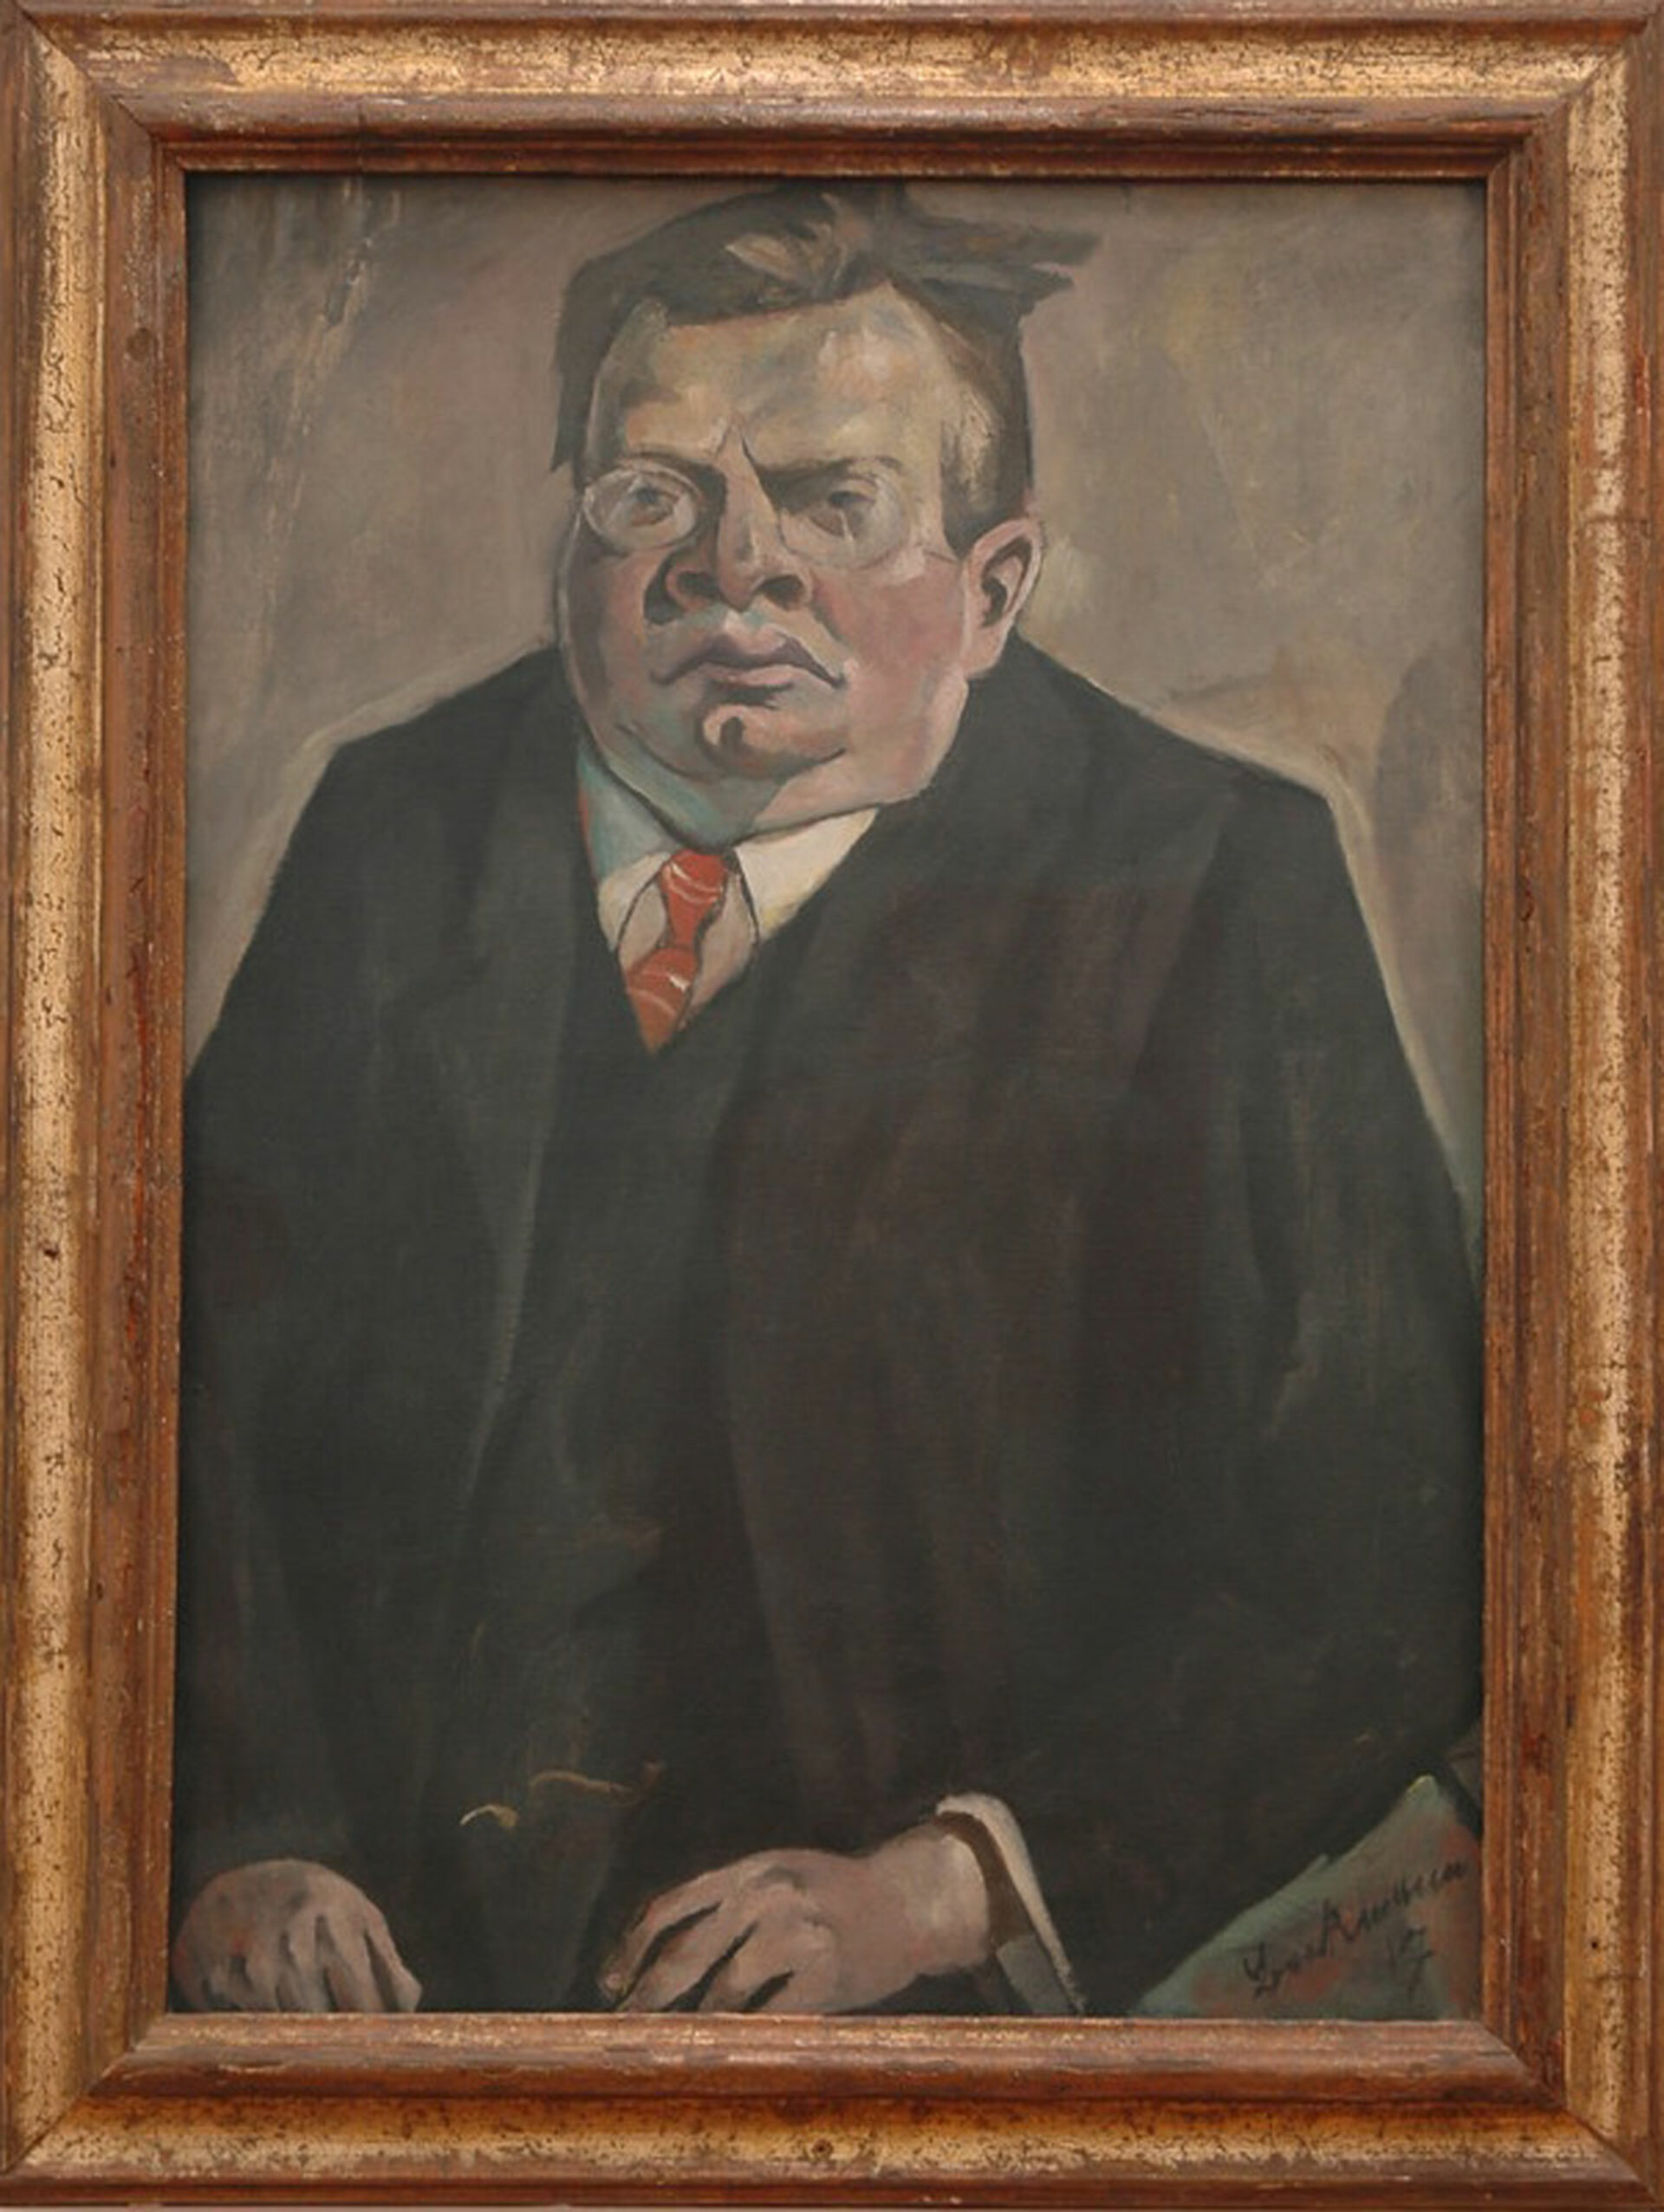 Max Beckmann, Bildnis Max Reger, 1917, Kunsthaus Zürich